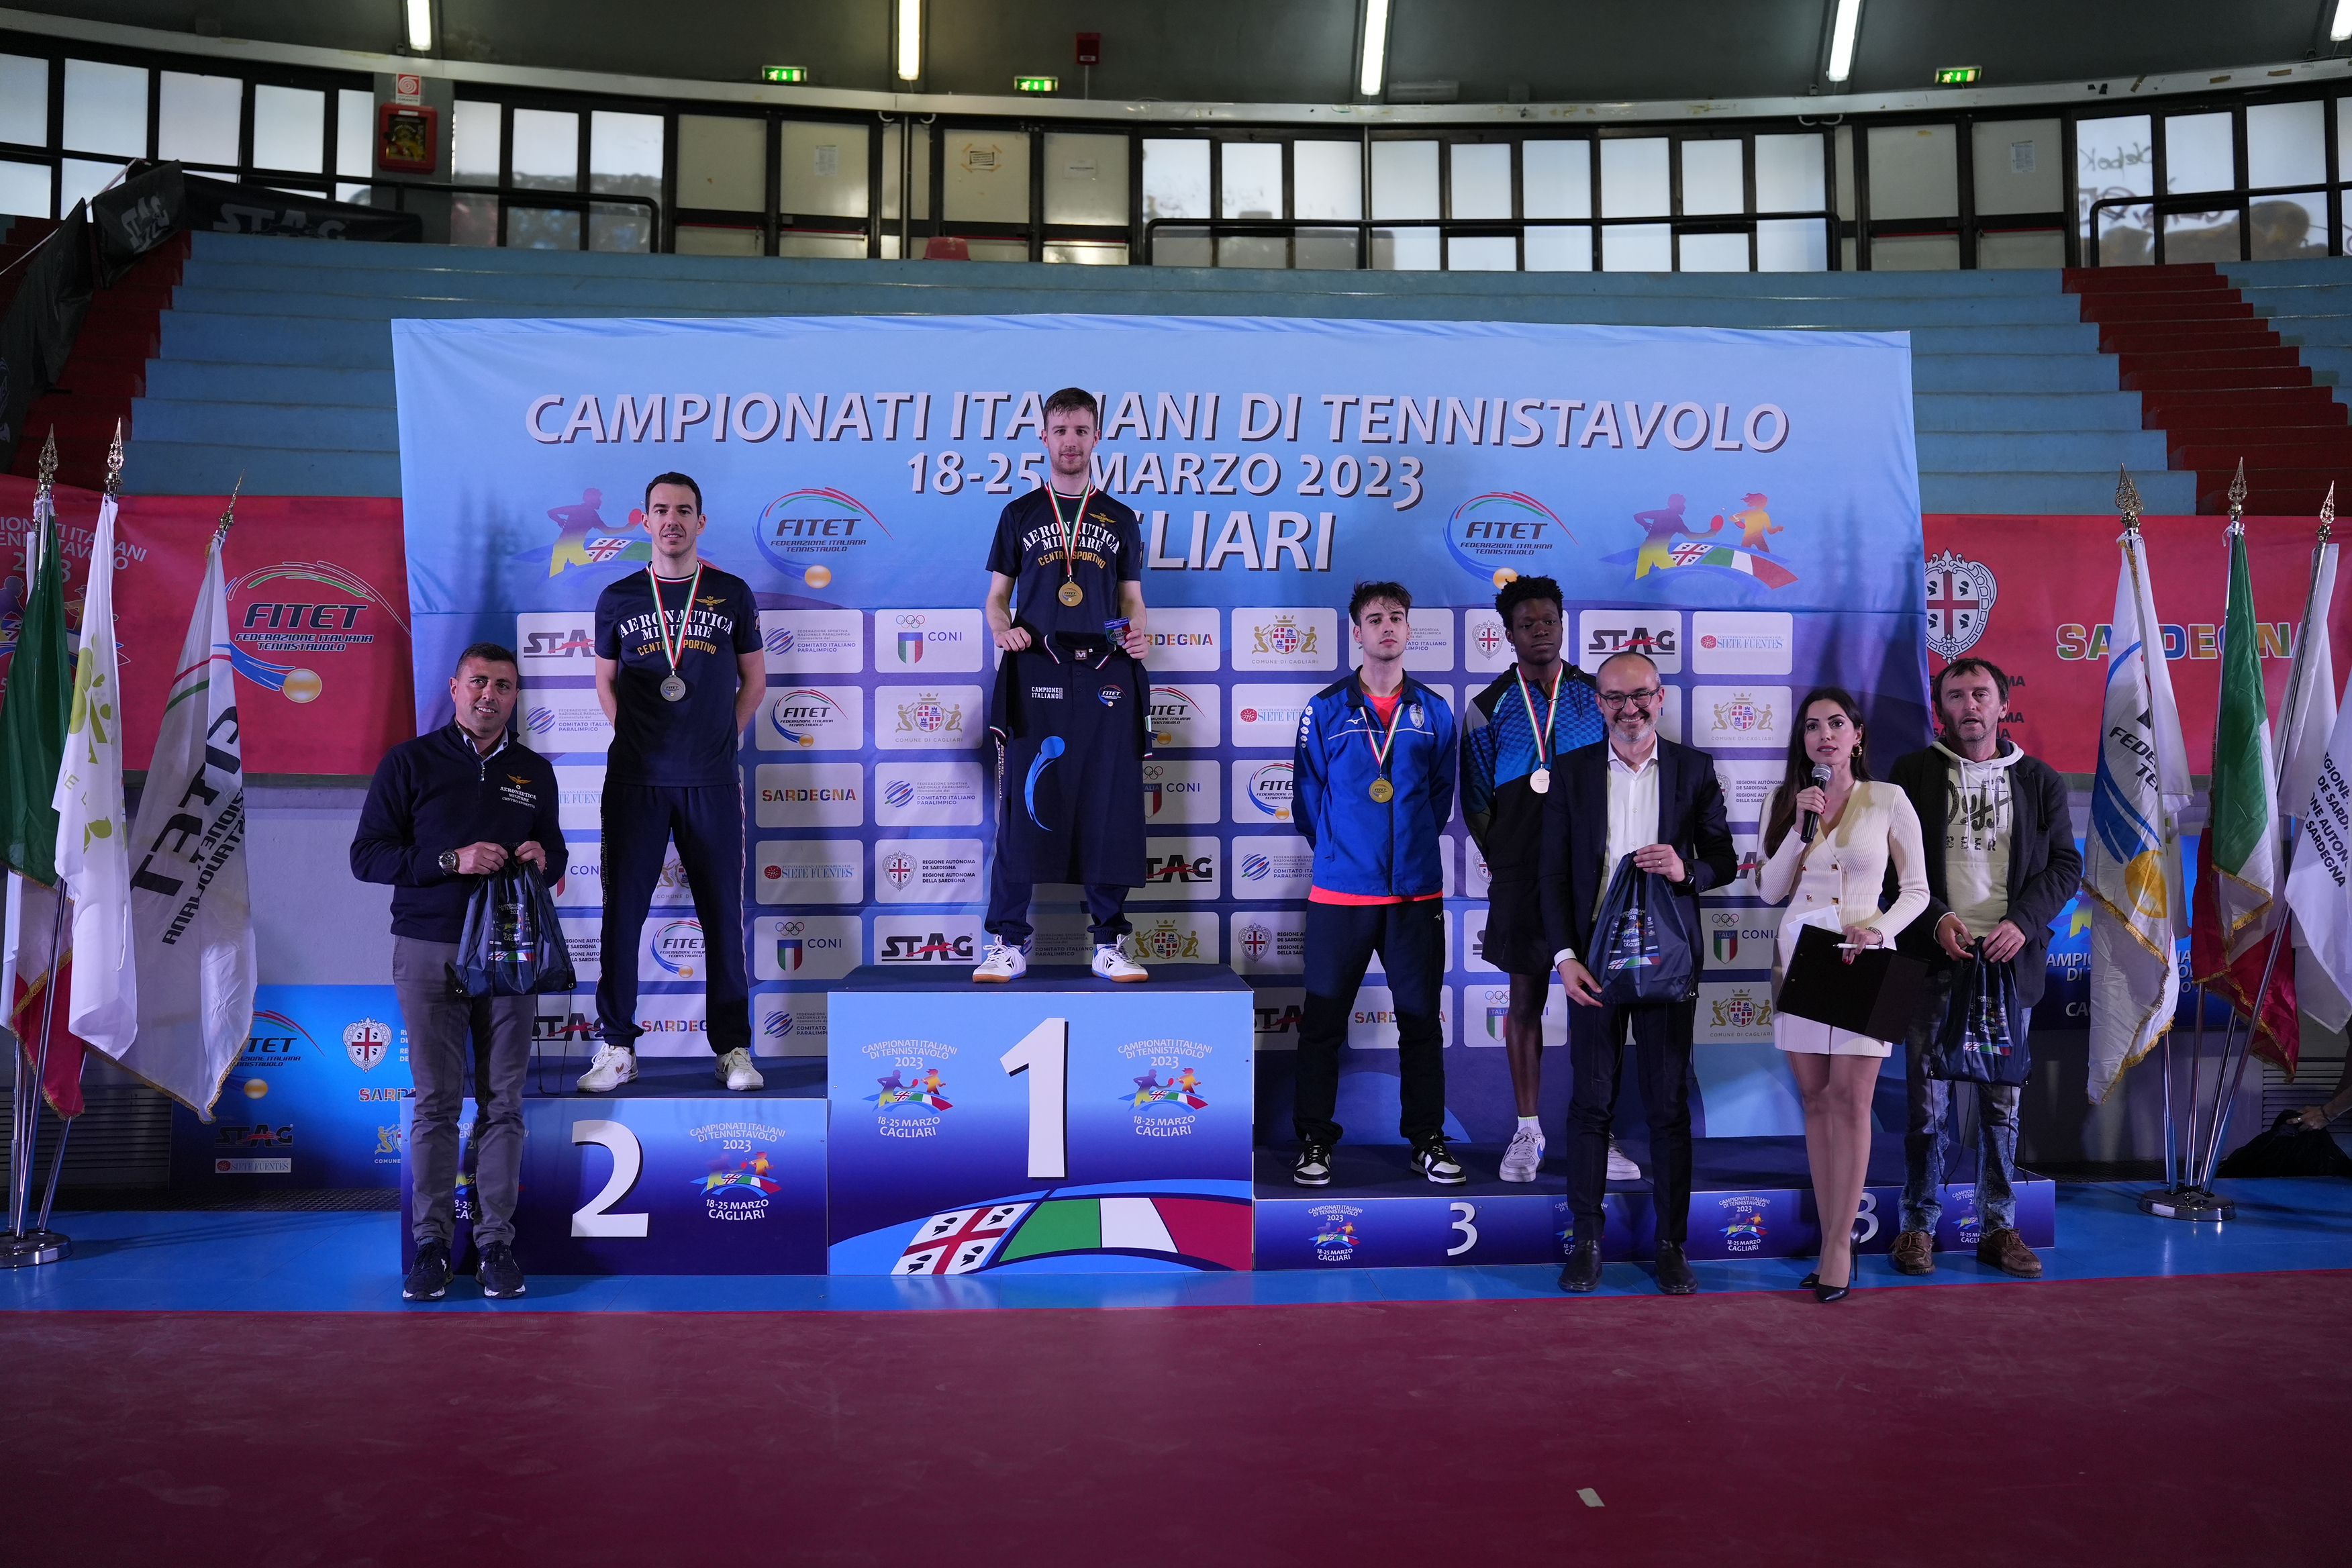 Campionati Italiani di Cagliari 2023 podio del singolare maschile assoluto